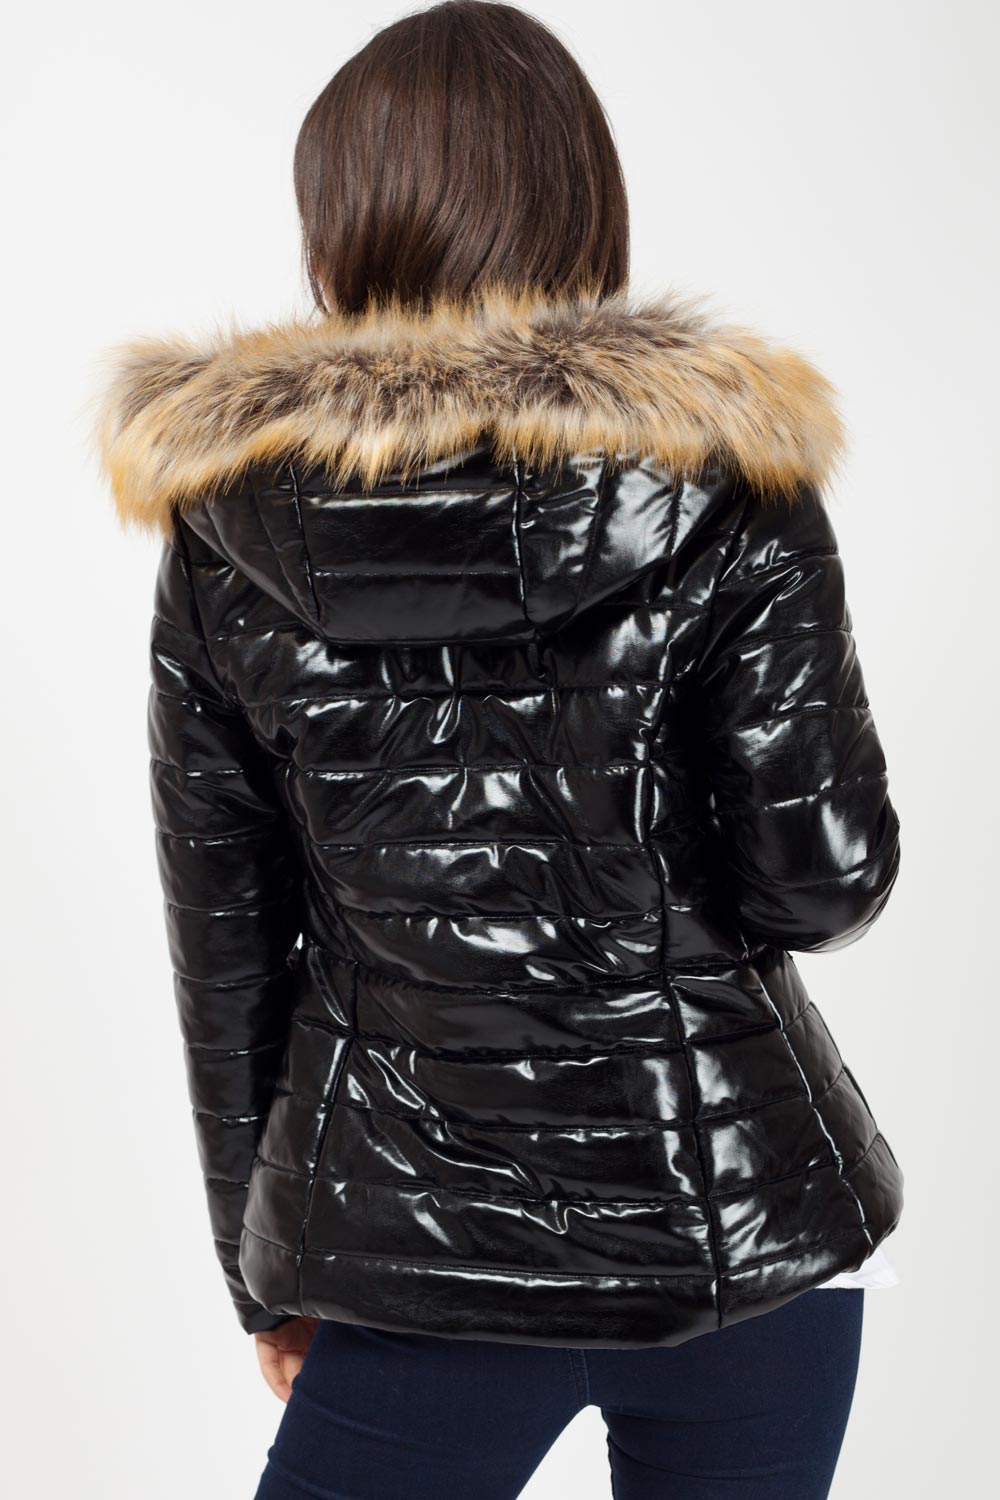 Wet Look Puffer Coat With Faux Fur Hood – | Wet Look Winter Coat